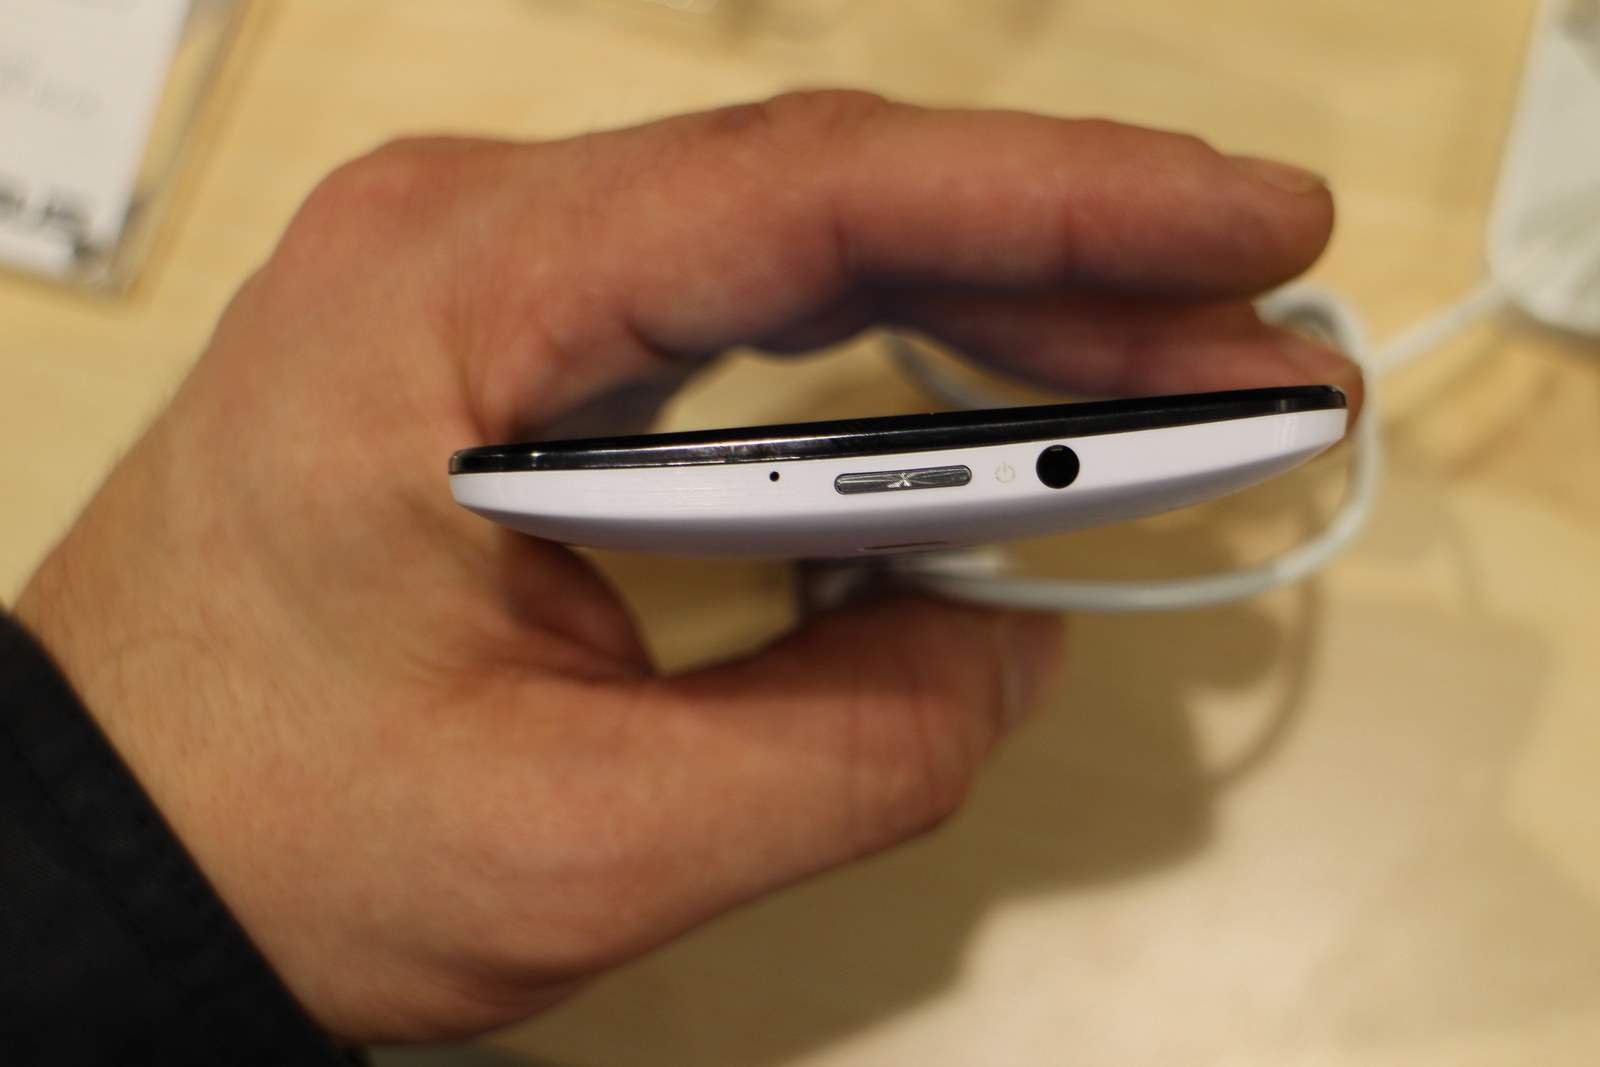 [MWC 2015] Asus Zenfone 2, une phablette de 5.5 pouces 3